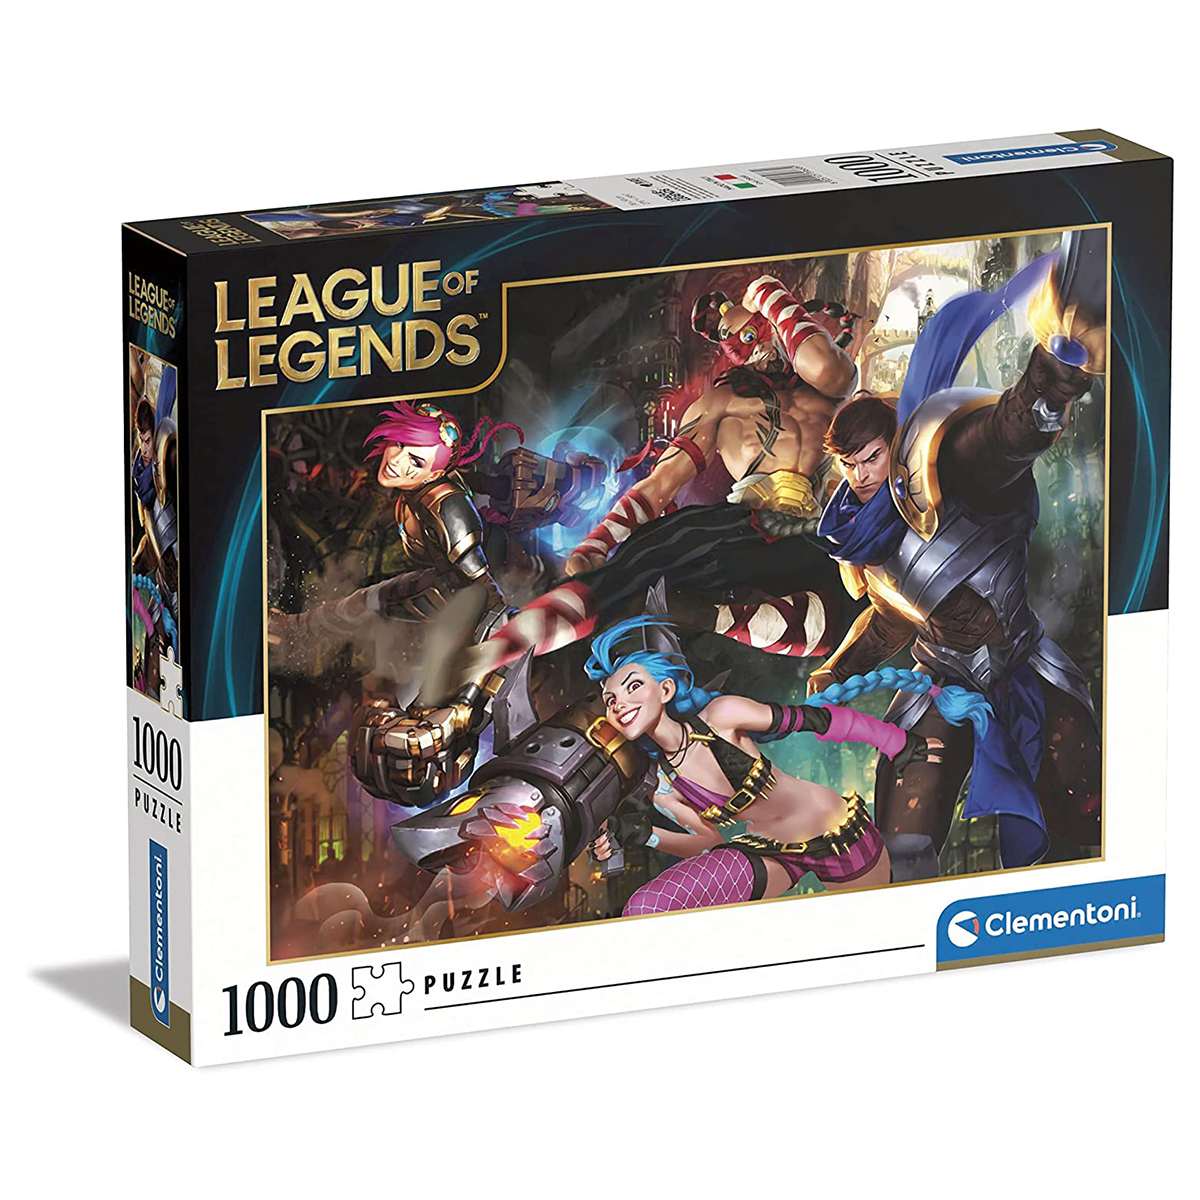 Puzzle Clementoni League of Legends de 1000 piezas